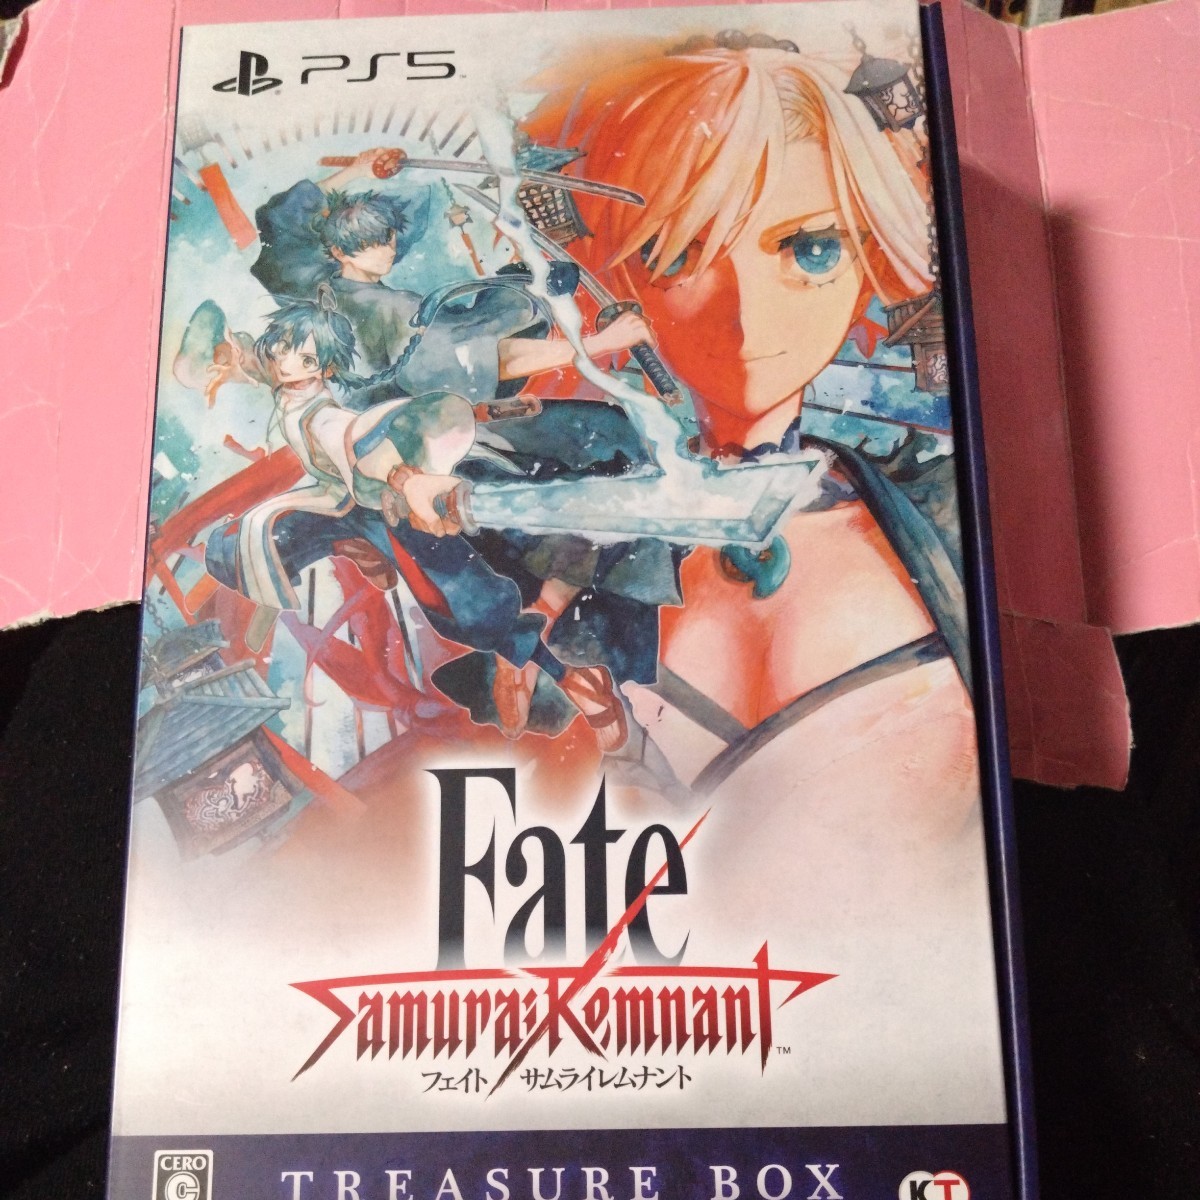 【PS5】 Fate/Samurai Remnant [TREASURE BOX]　フェイトサムライレムナントのサムネイル